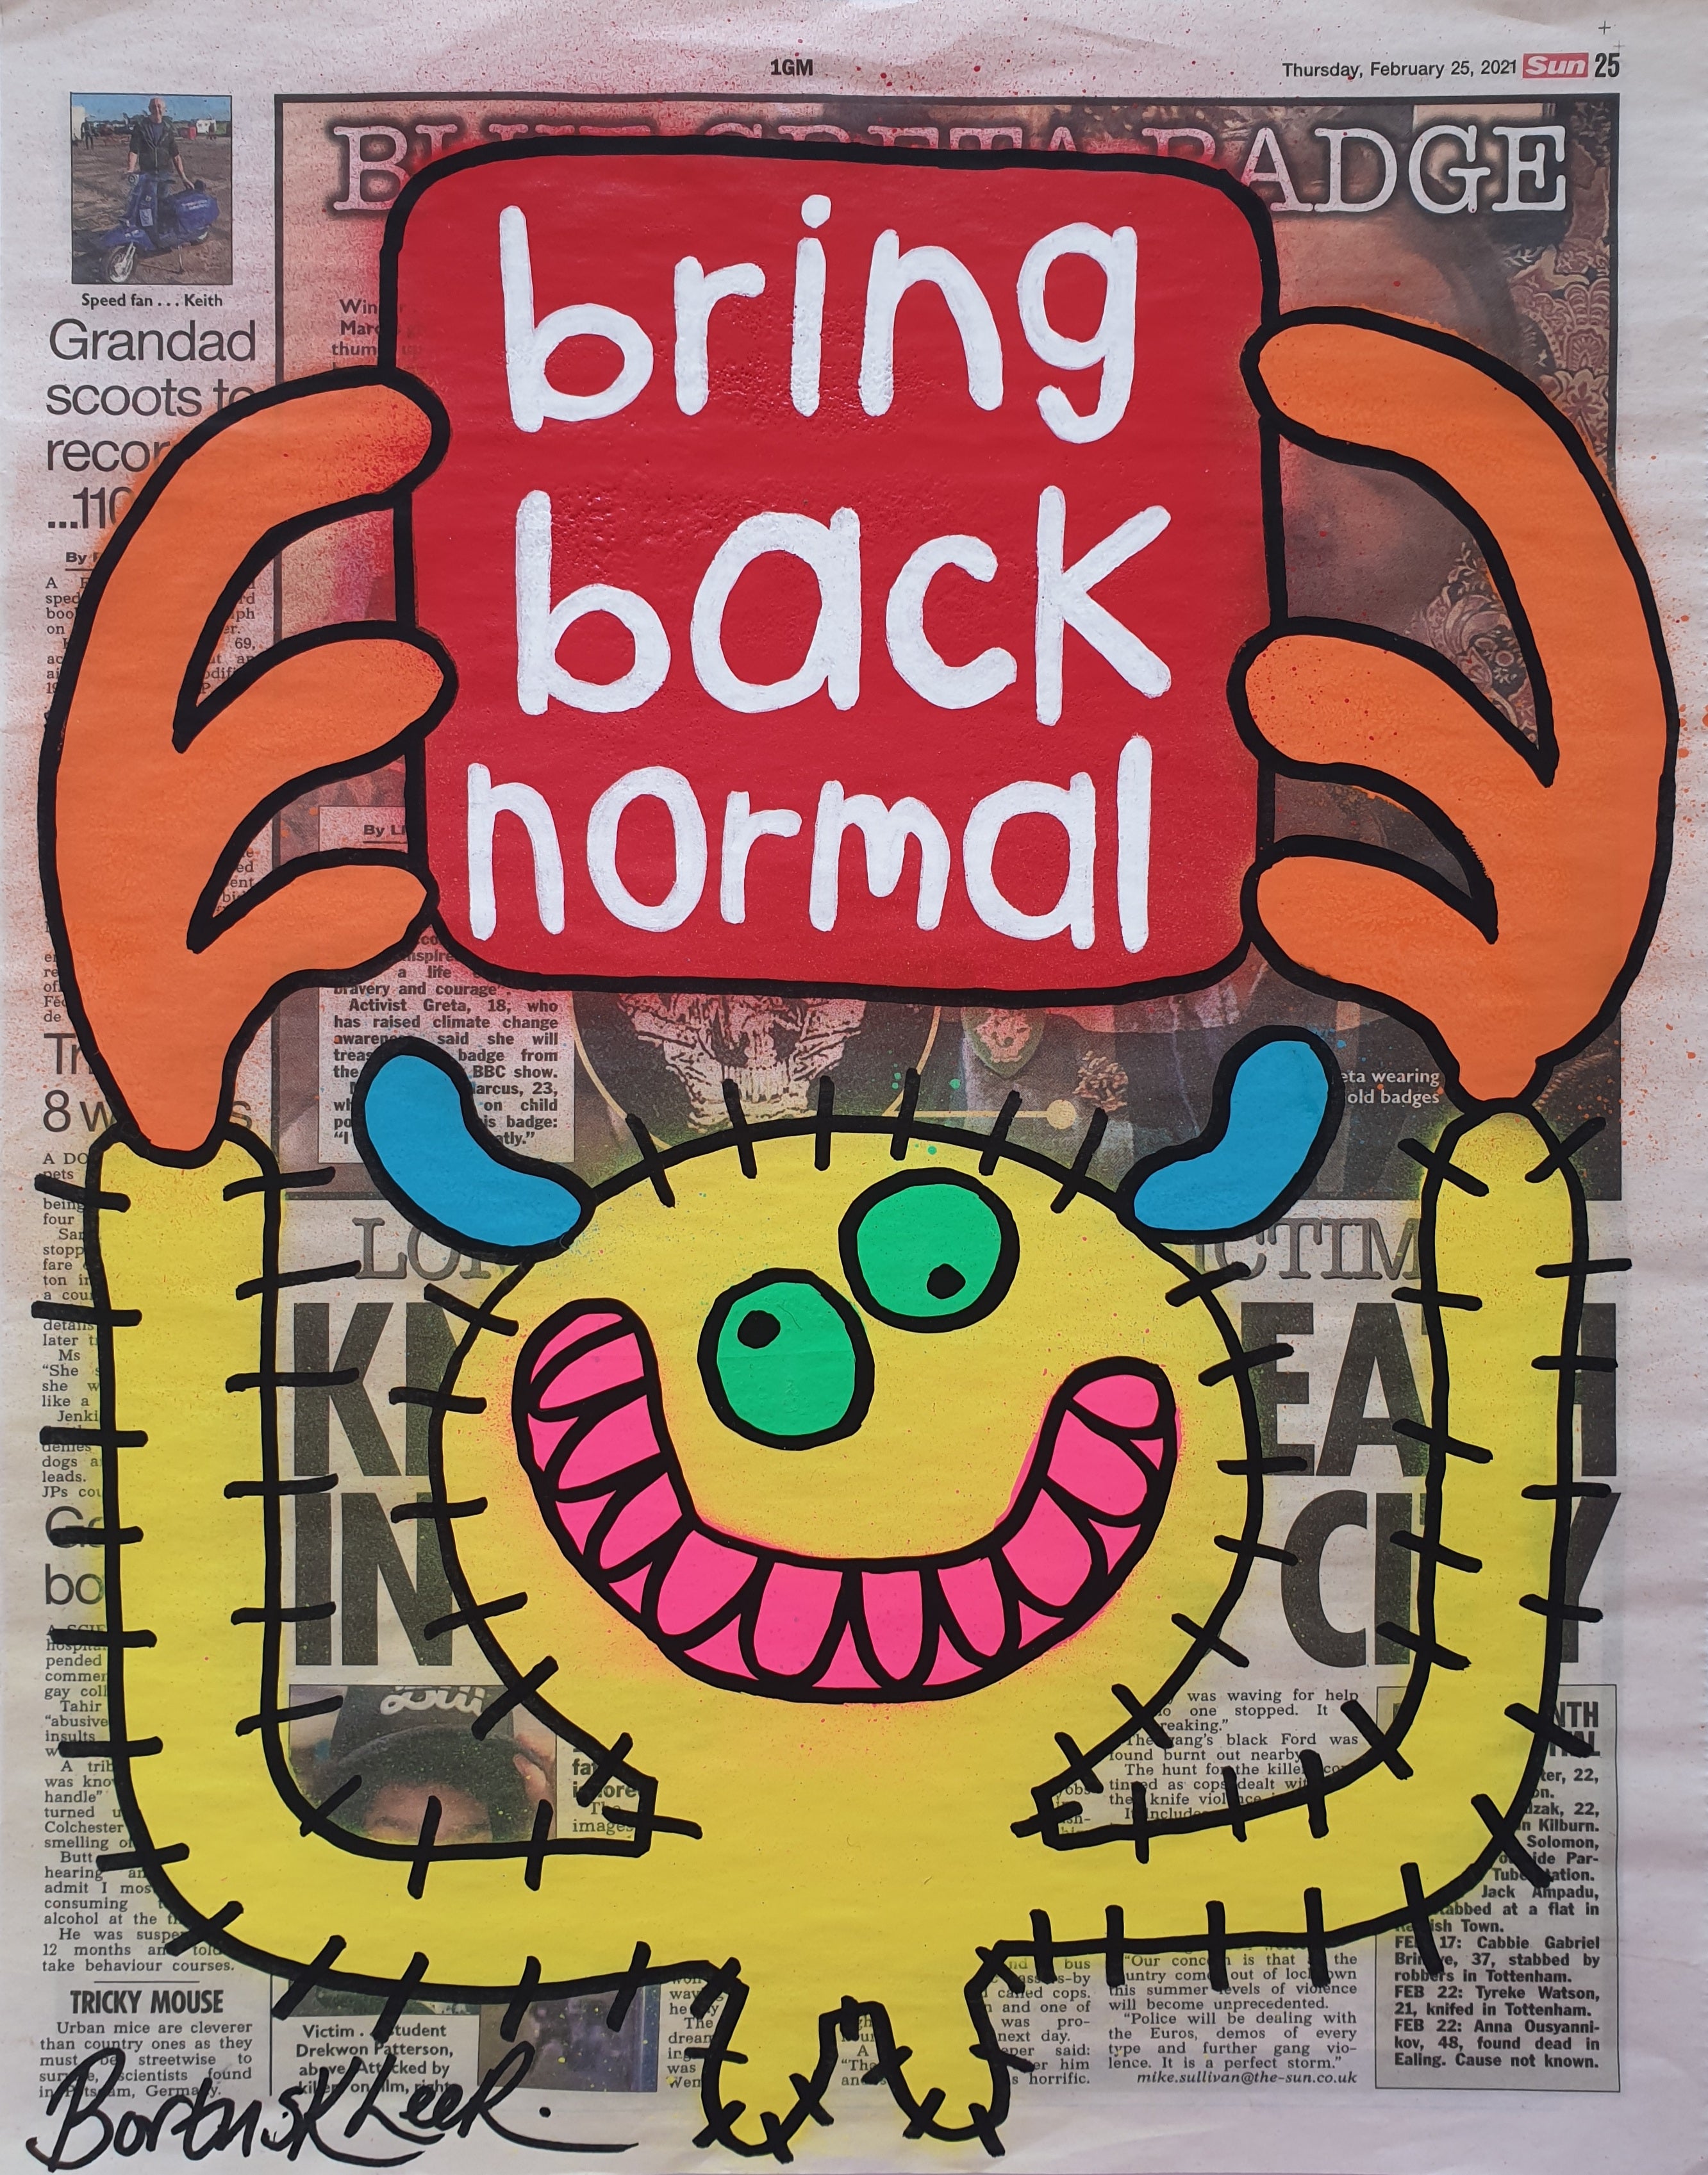 Bring back normal